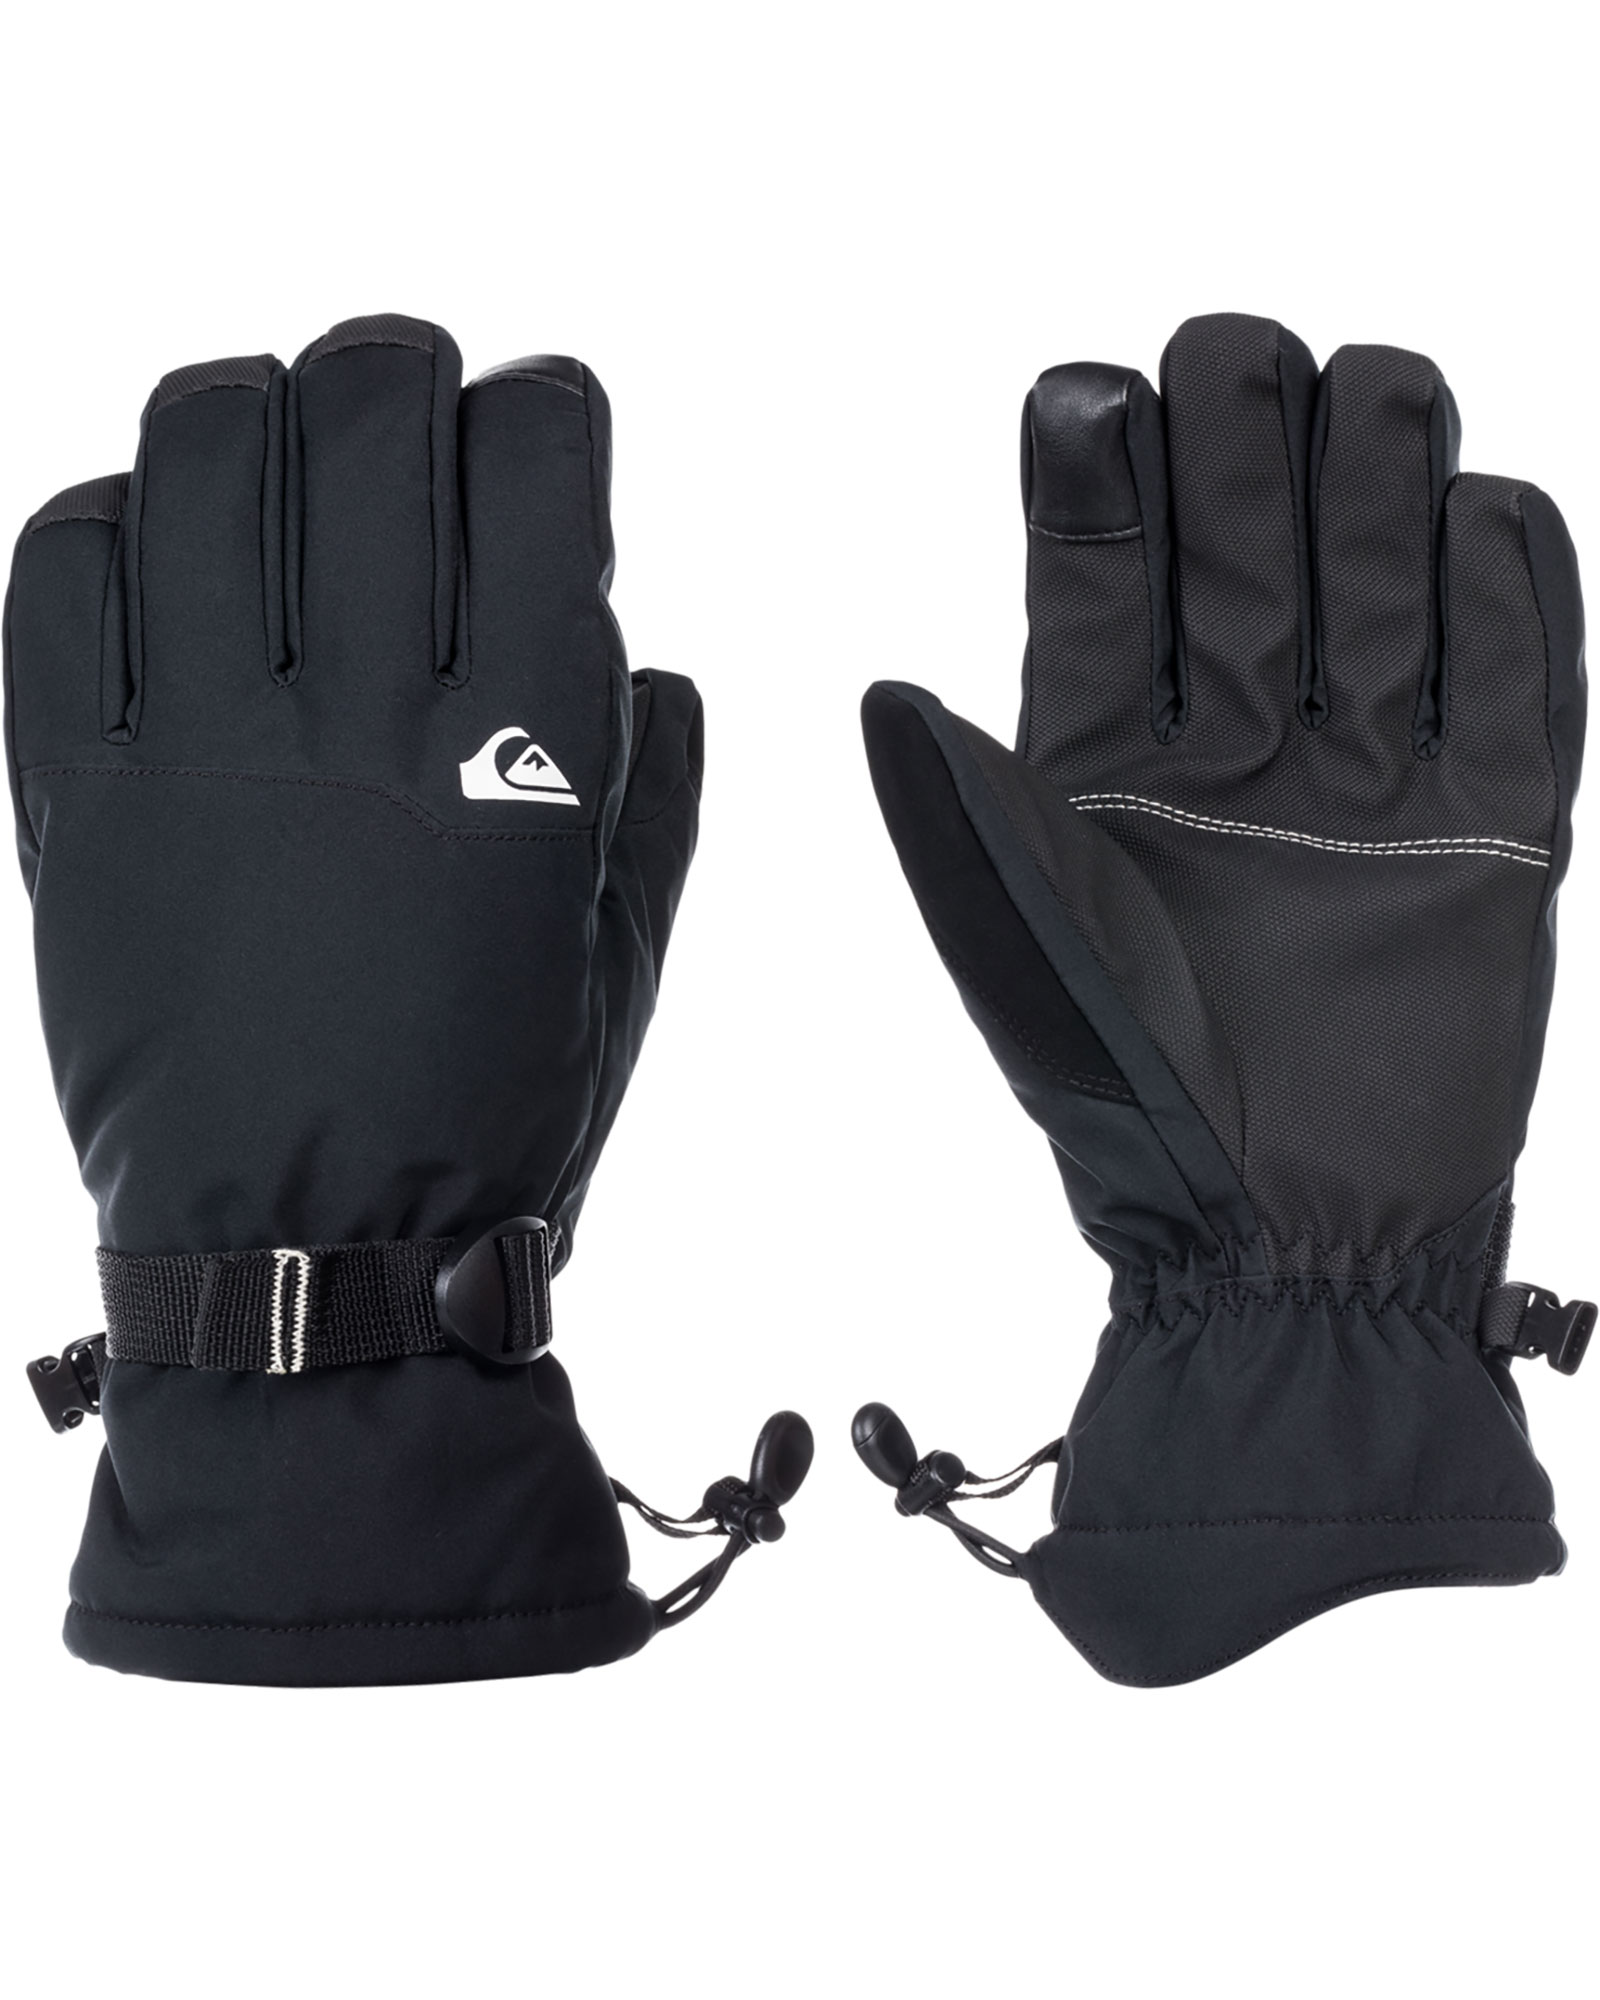 Quiksilver Mission Men’s Gloves - True Black L